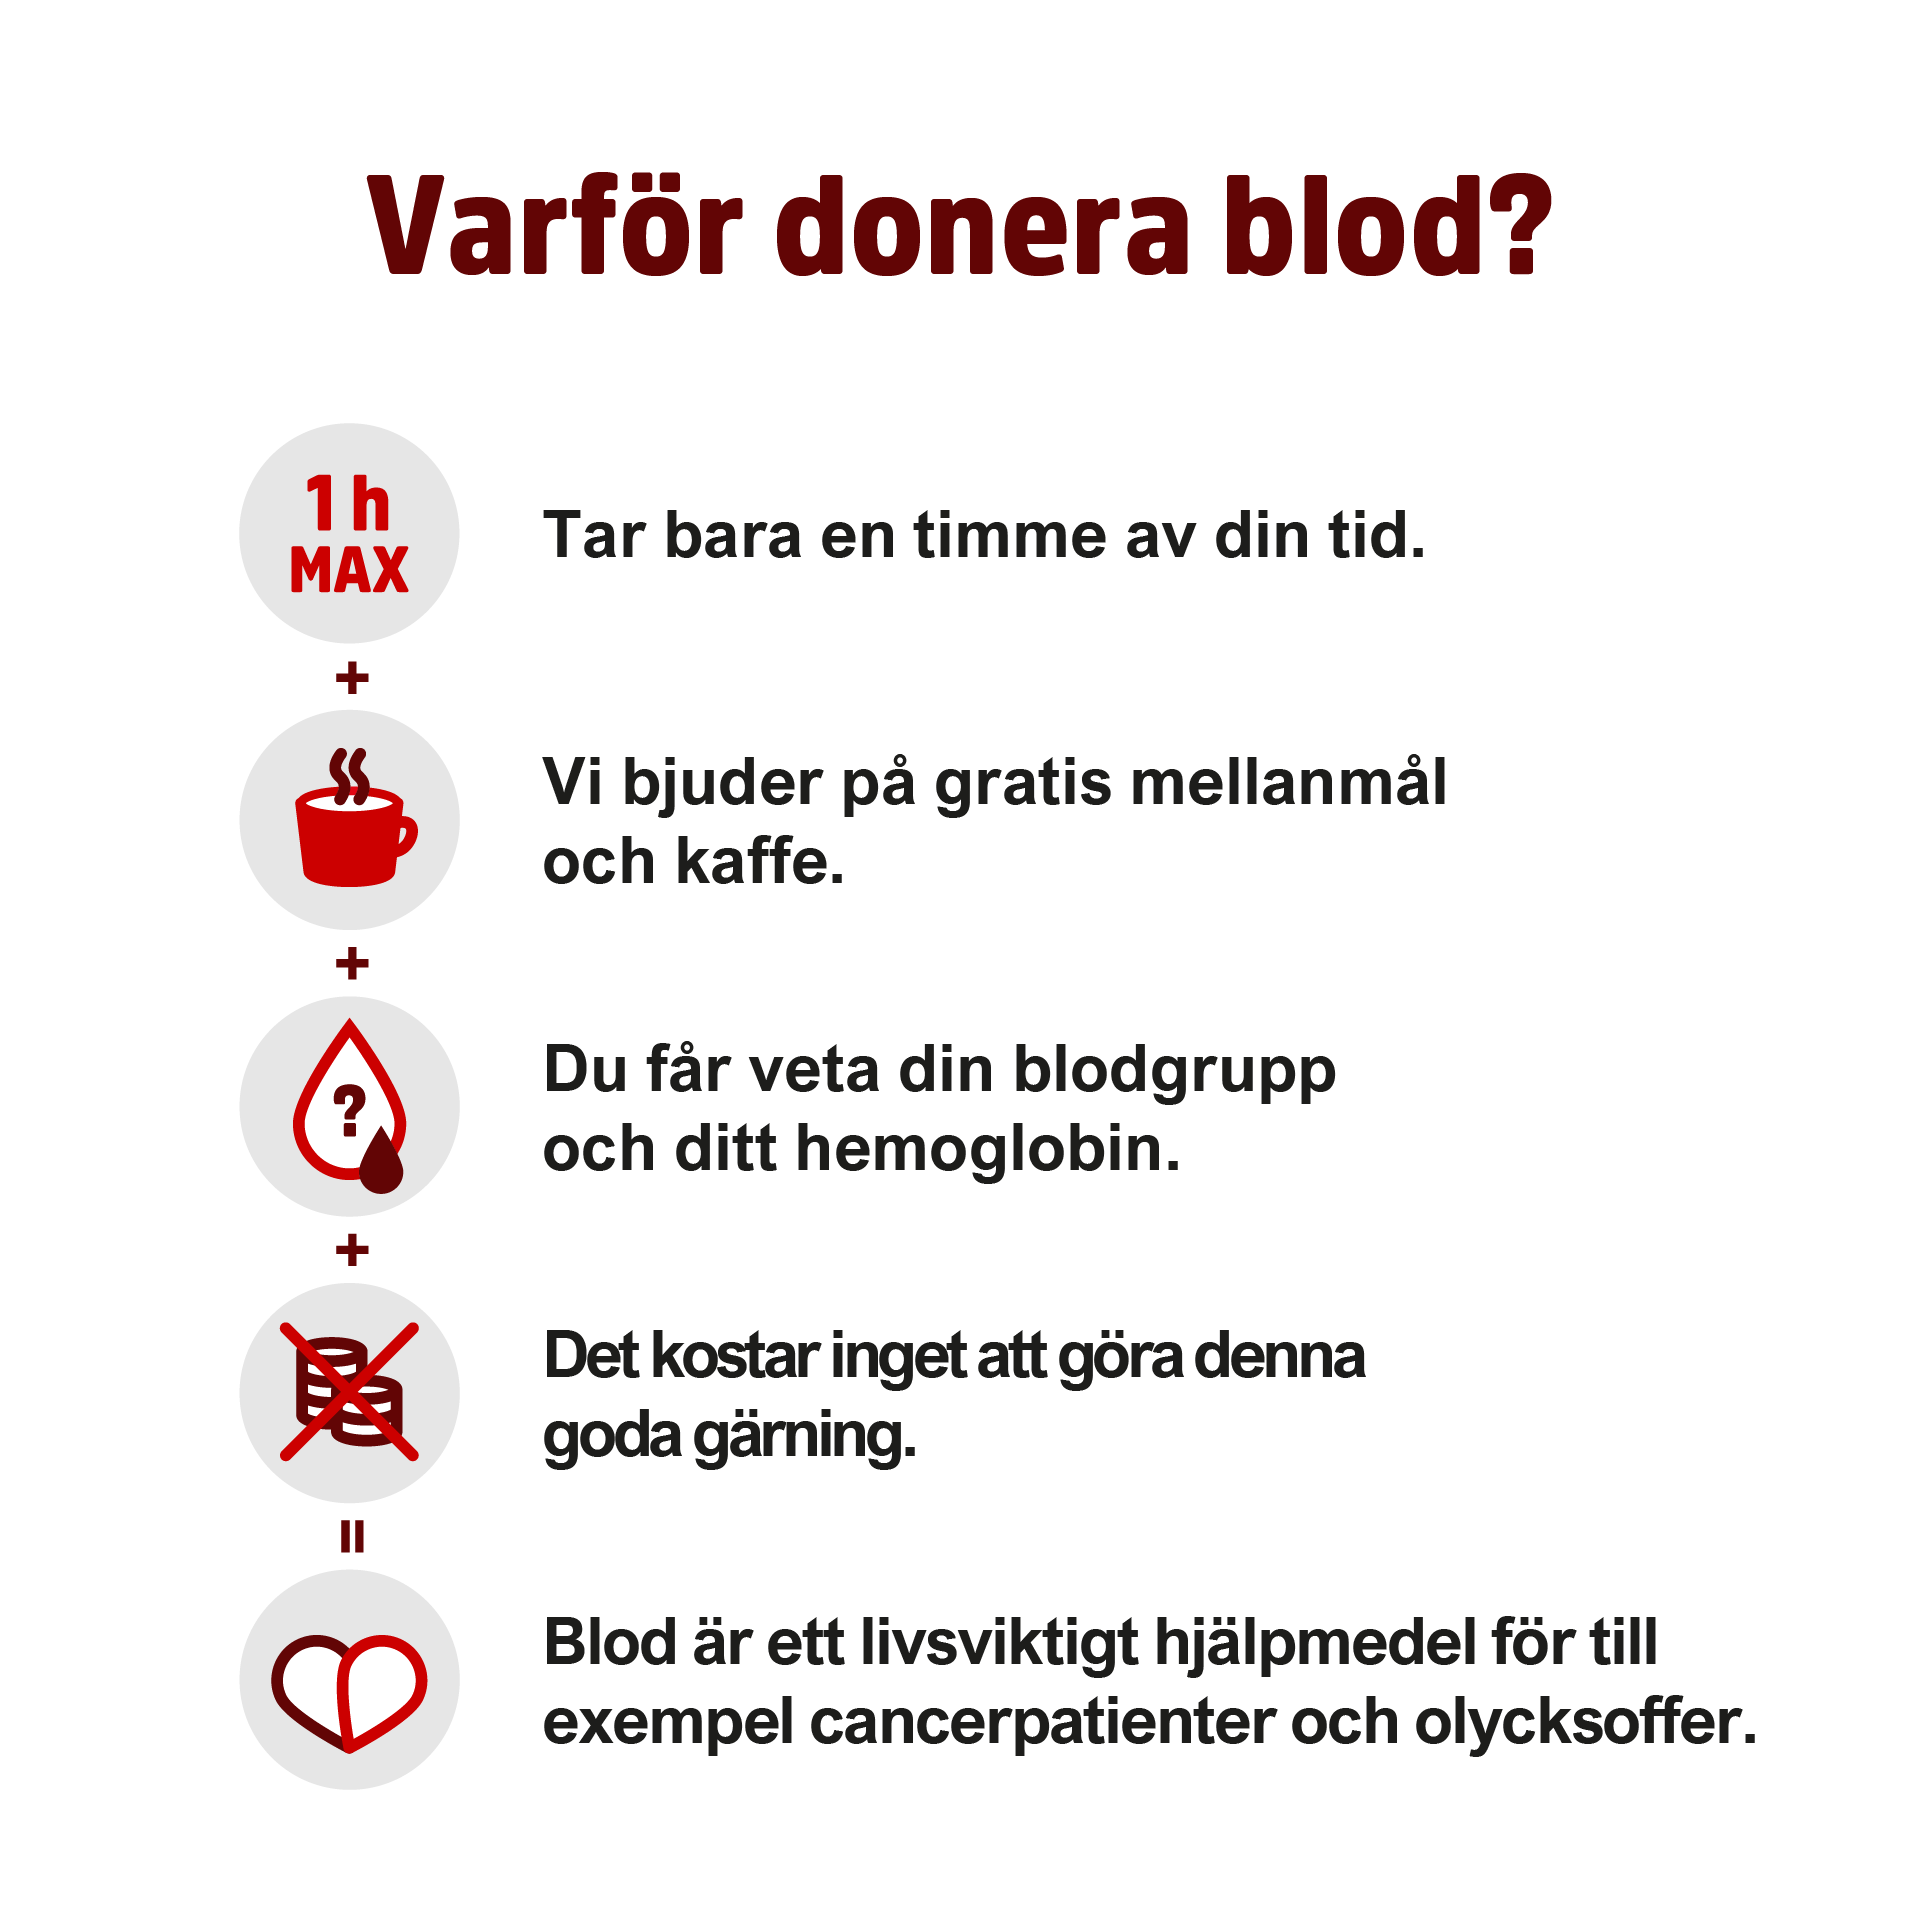 5 skäl att donera blod